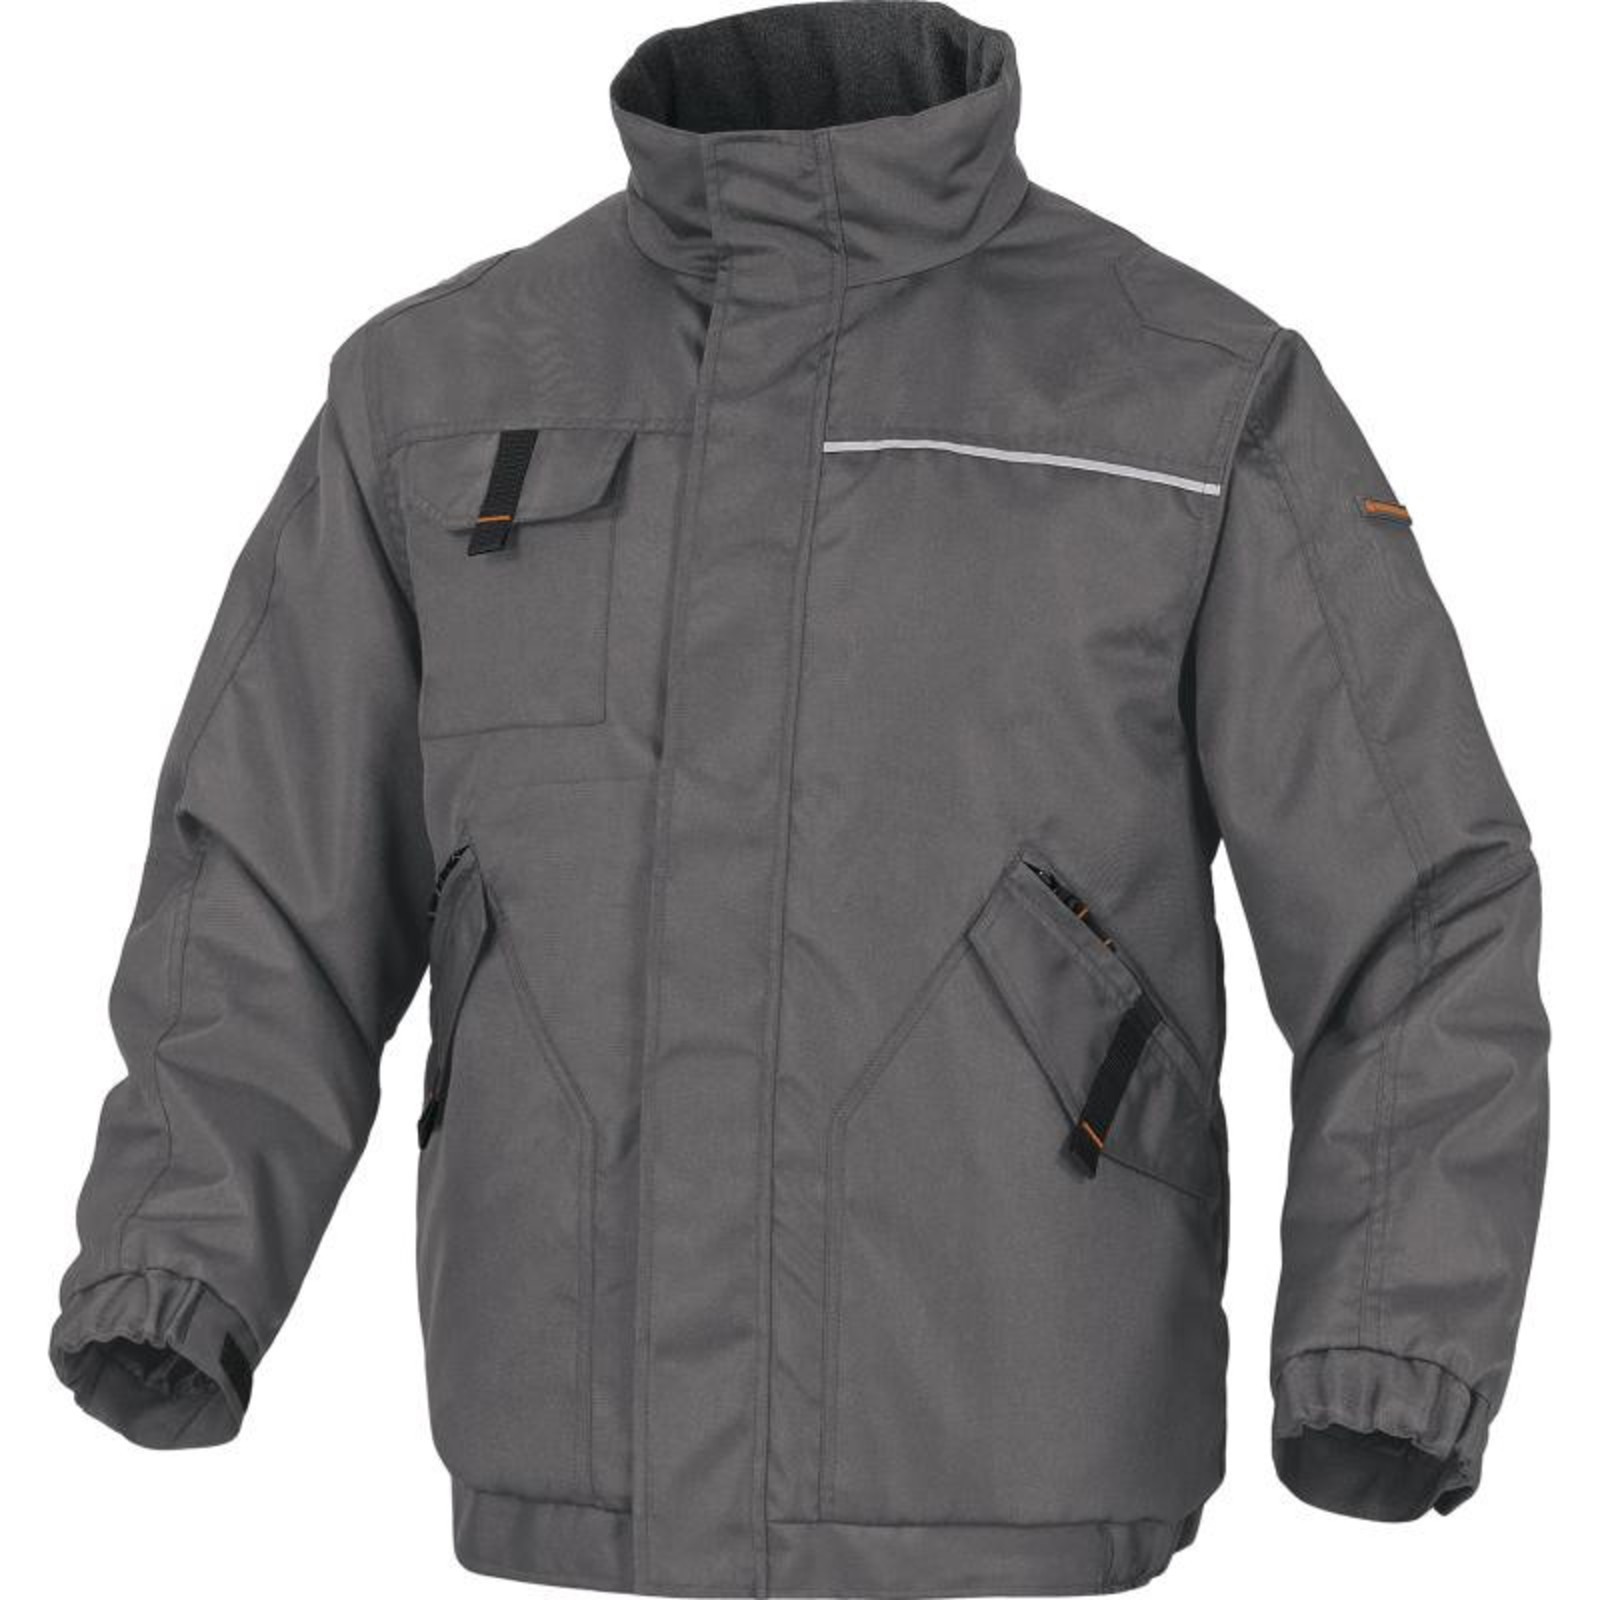 Zimná pracovná bunda Delta Plus Northwood2 - veľkosť: S, farba: sivá/oranžová